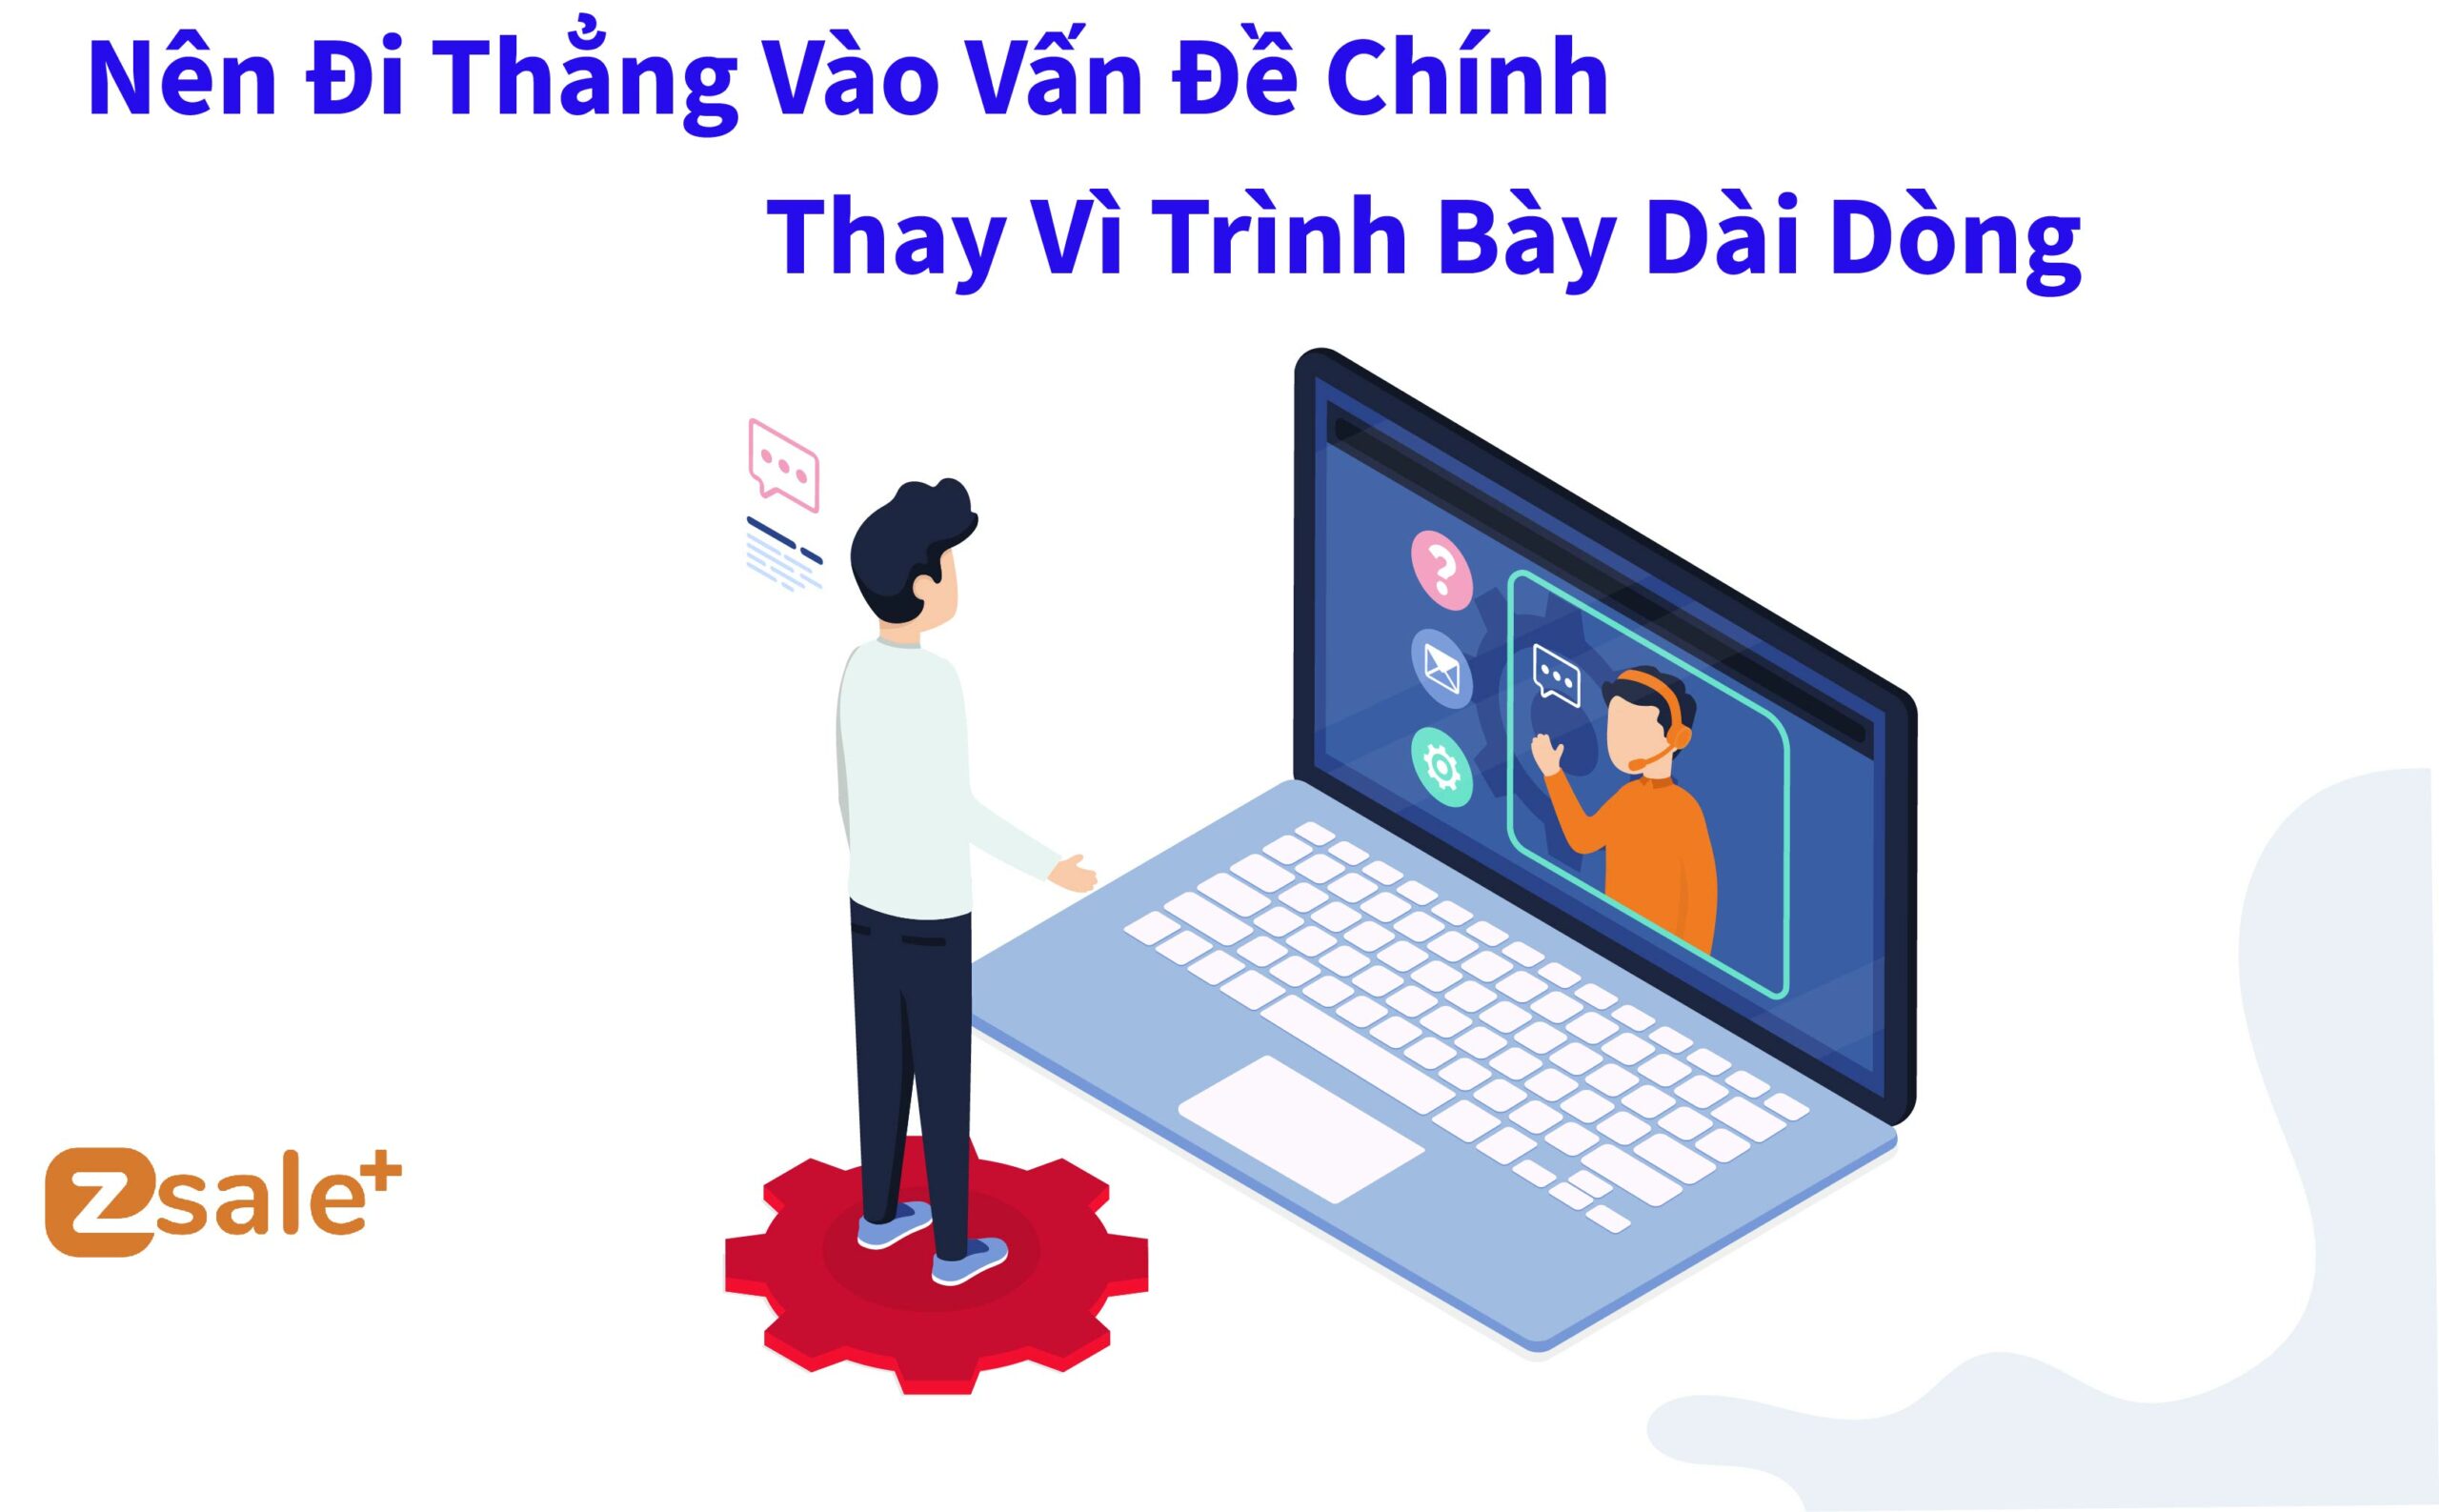 di-thang-vao-van-de-chinh-thay-vi-trinh-bay-dai-dong